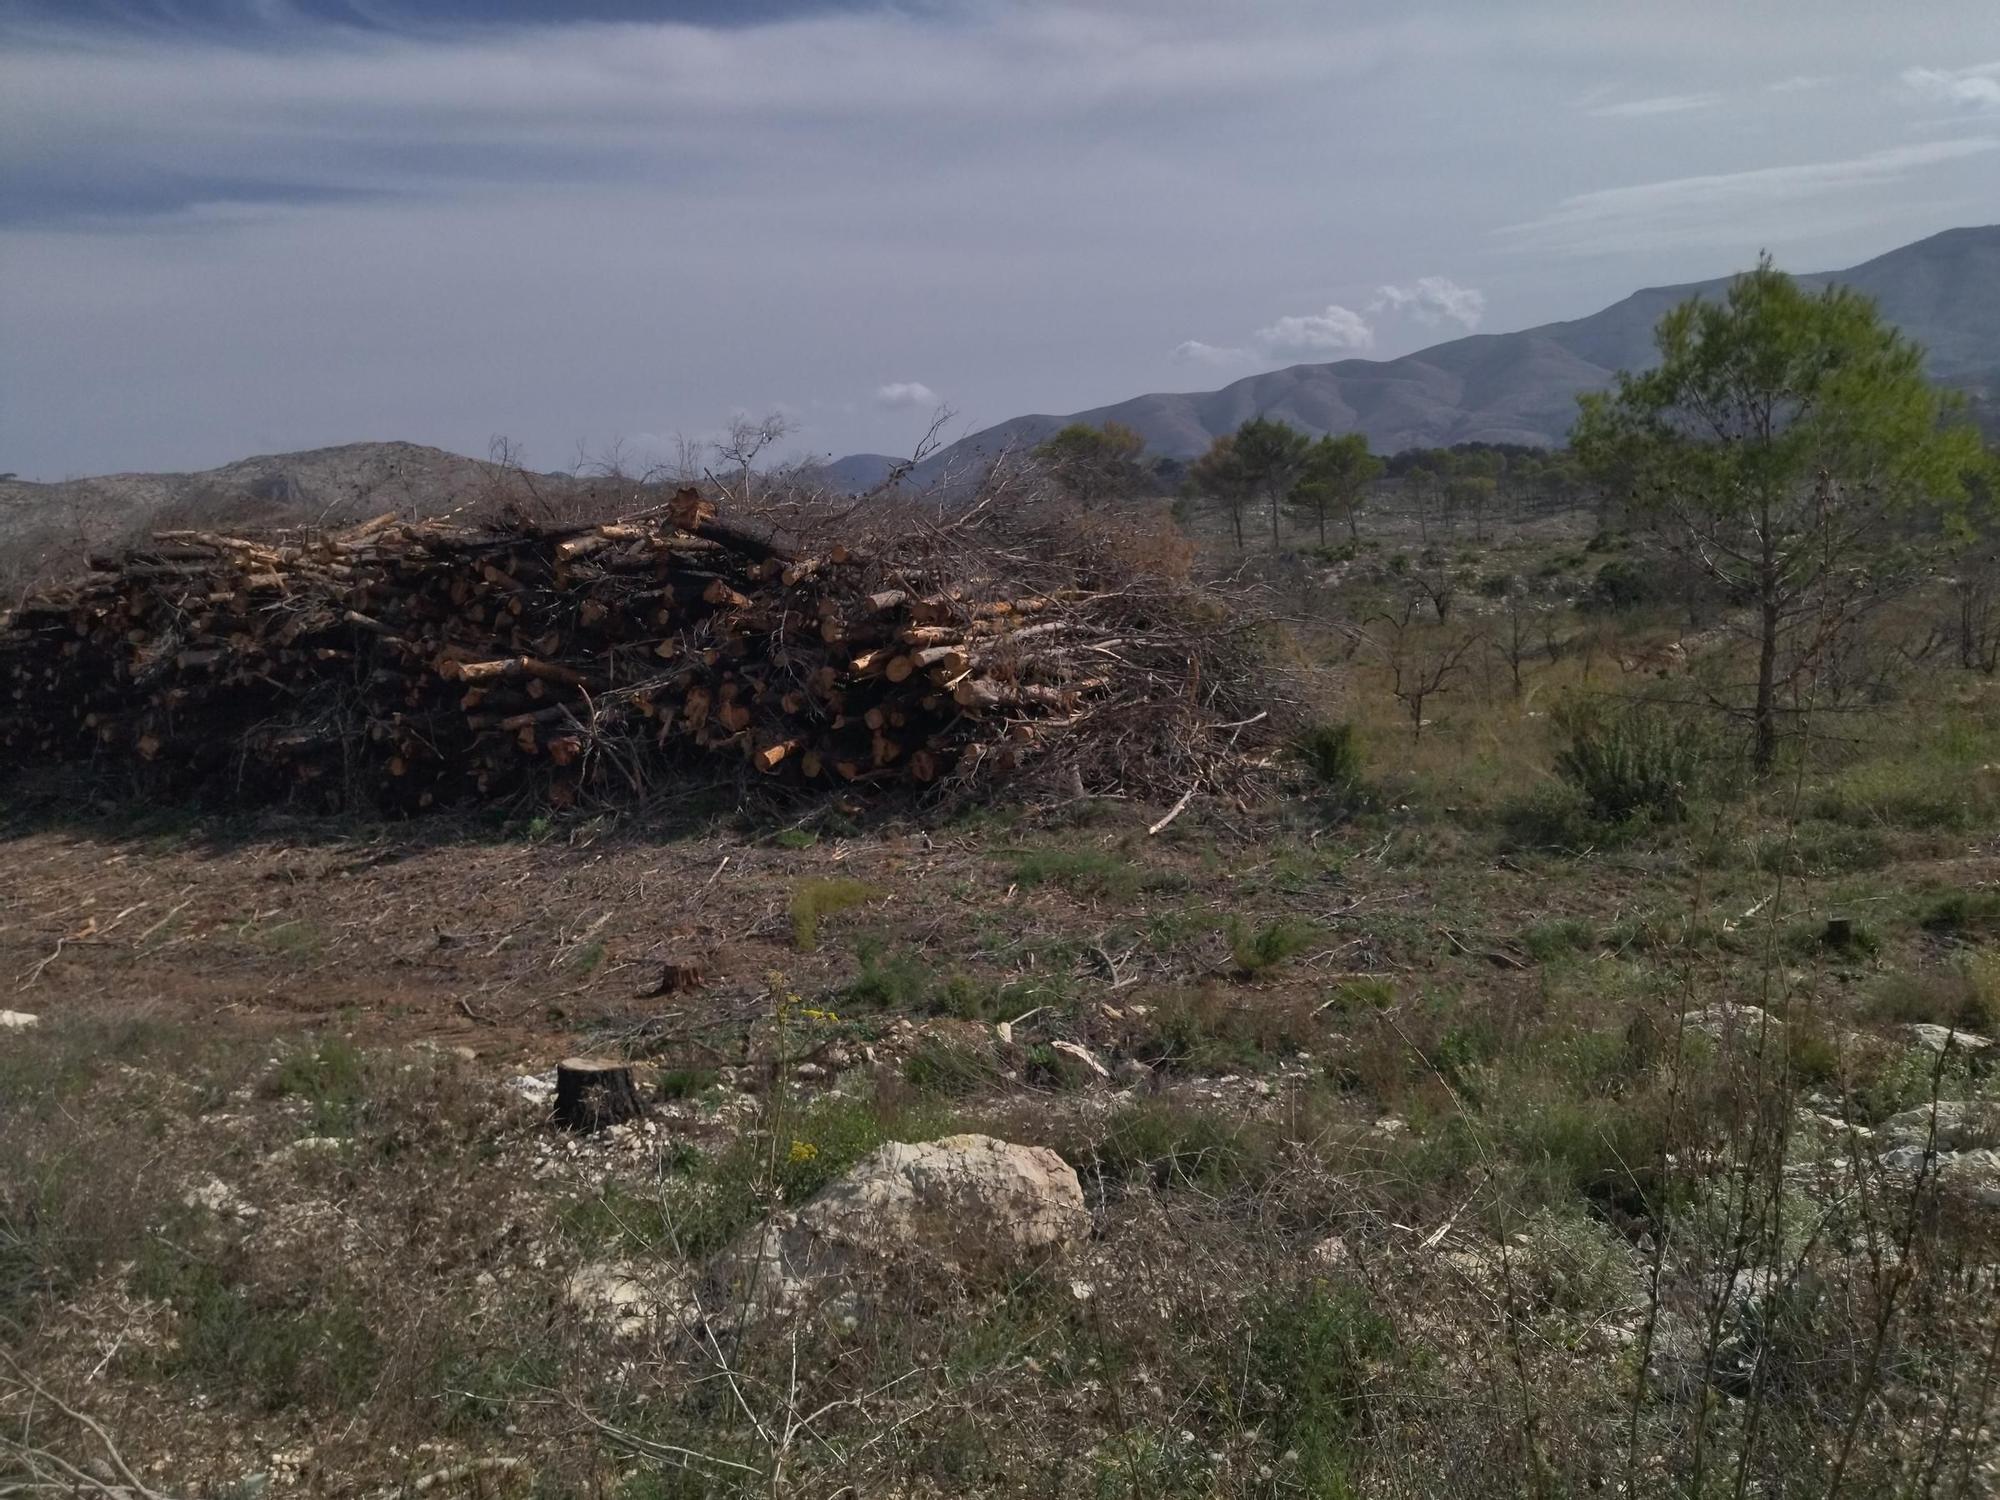 Regeneración tras la catástrofe: miles de pinos carbonizados y ahora talados y apilados